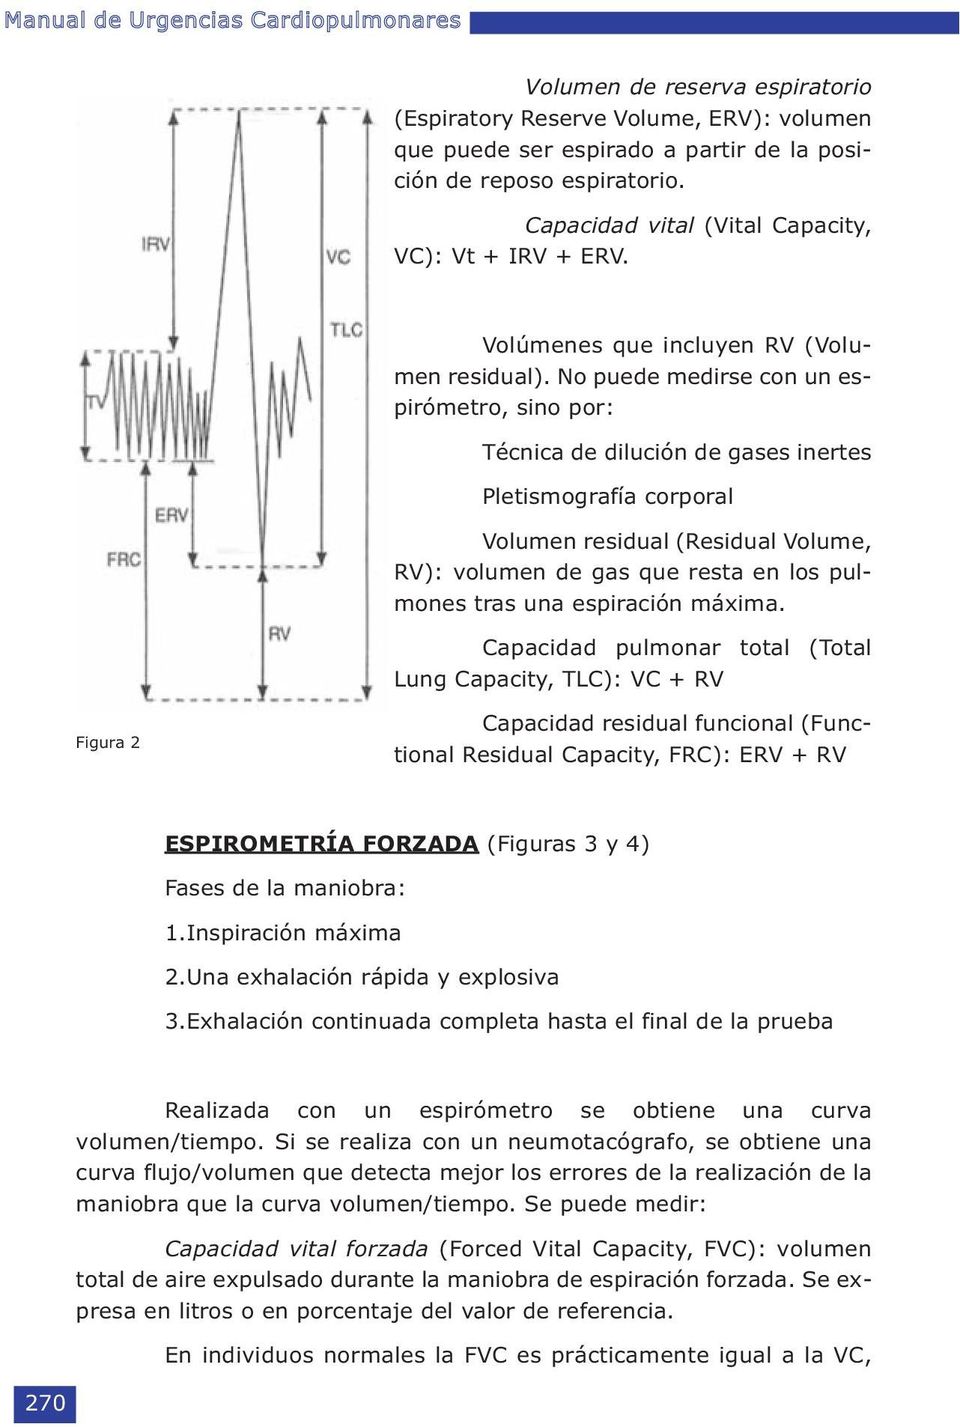 No puede medirse con un espirómetro, sino por: Técnica de dilución de gases inertes Pletismografía corporal Volumen residual (Residual Volume, RV): volumen de gas que resta en los pulmones tras una